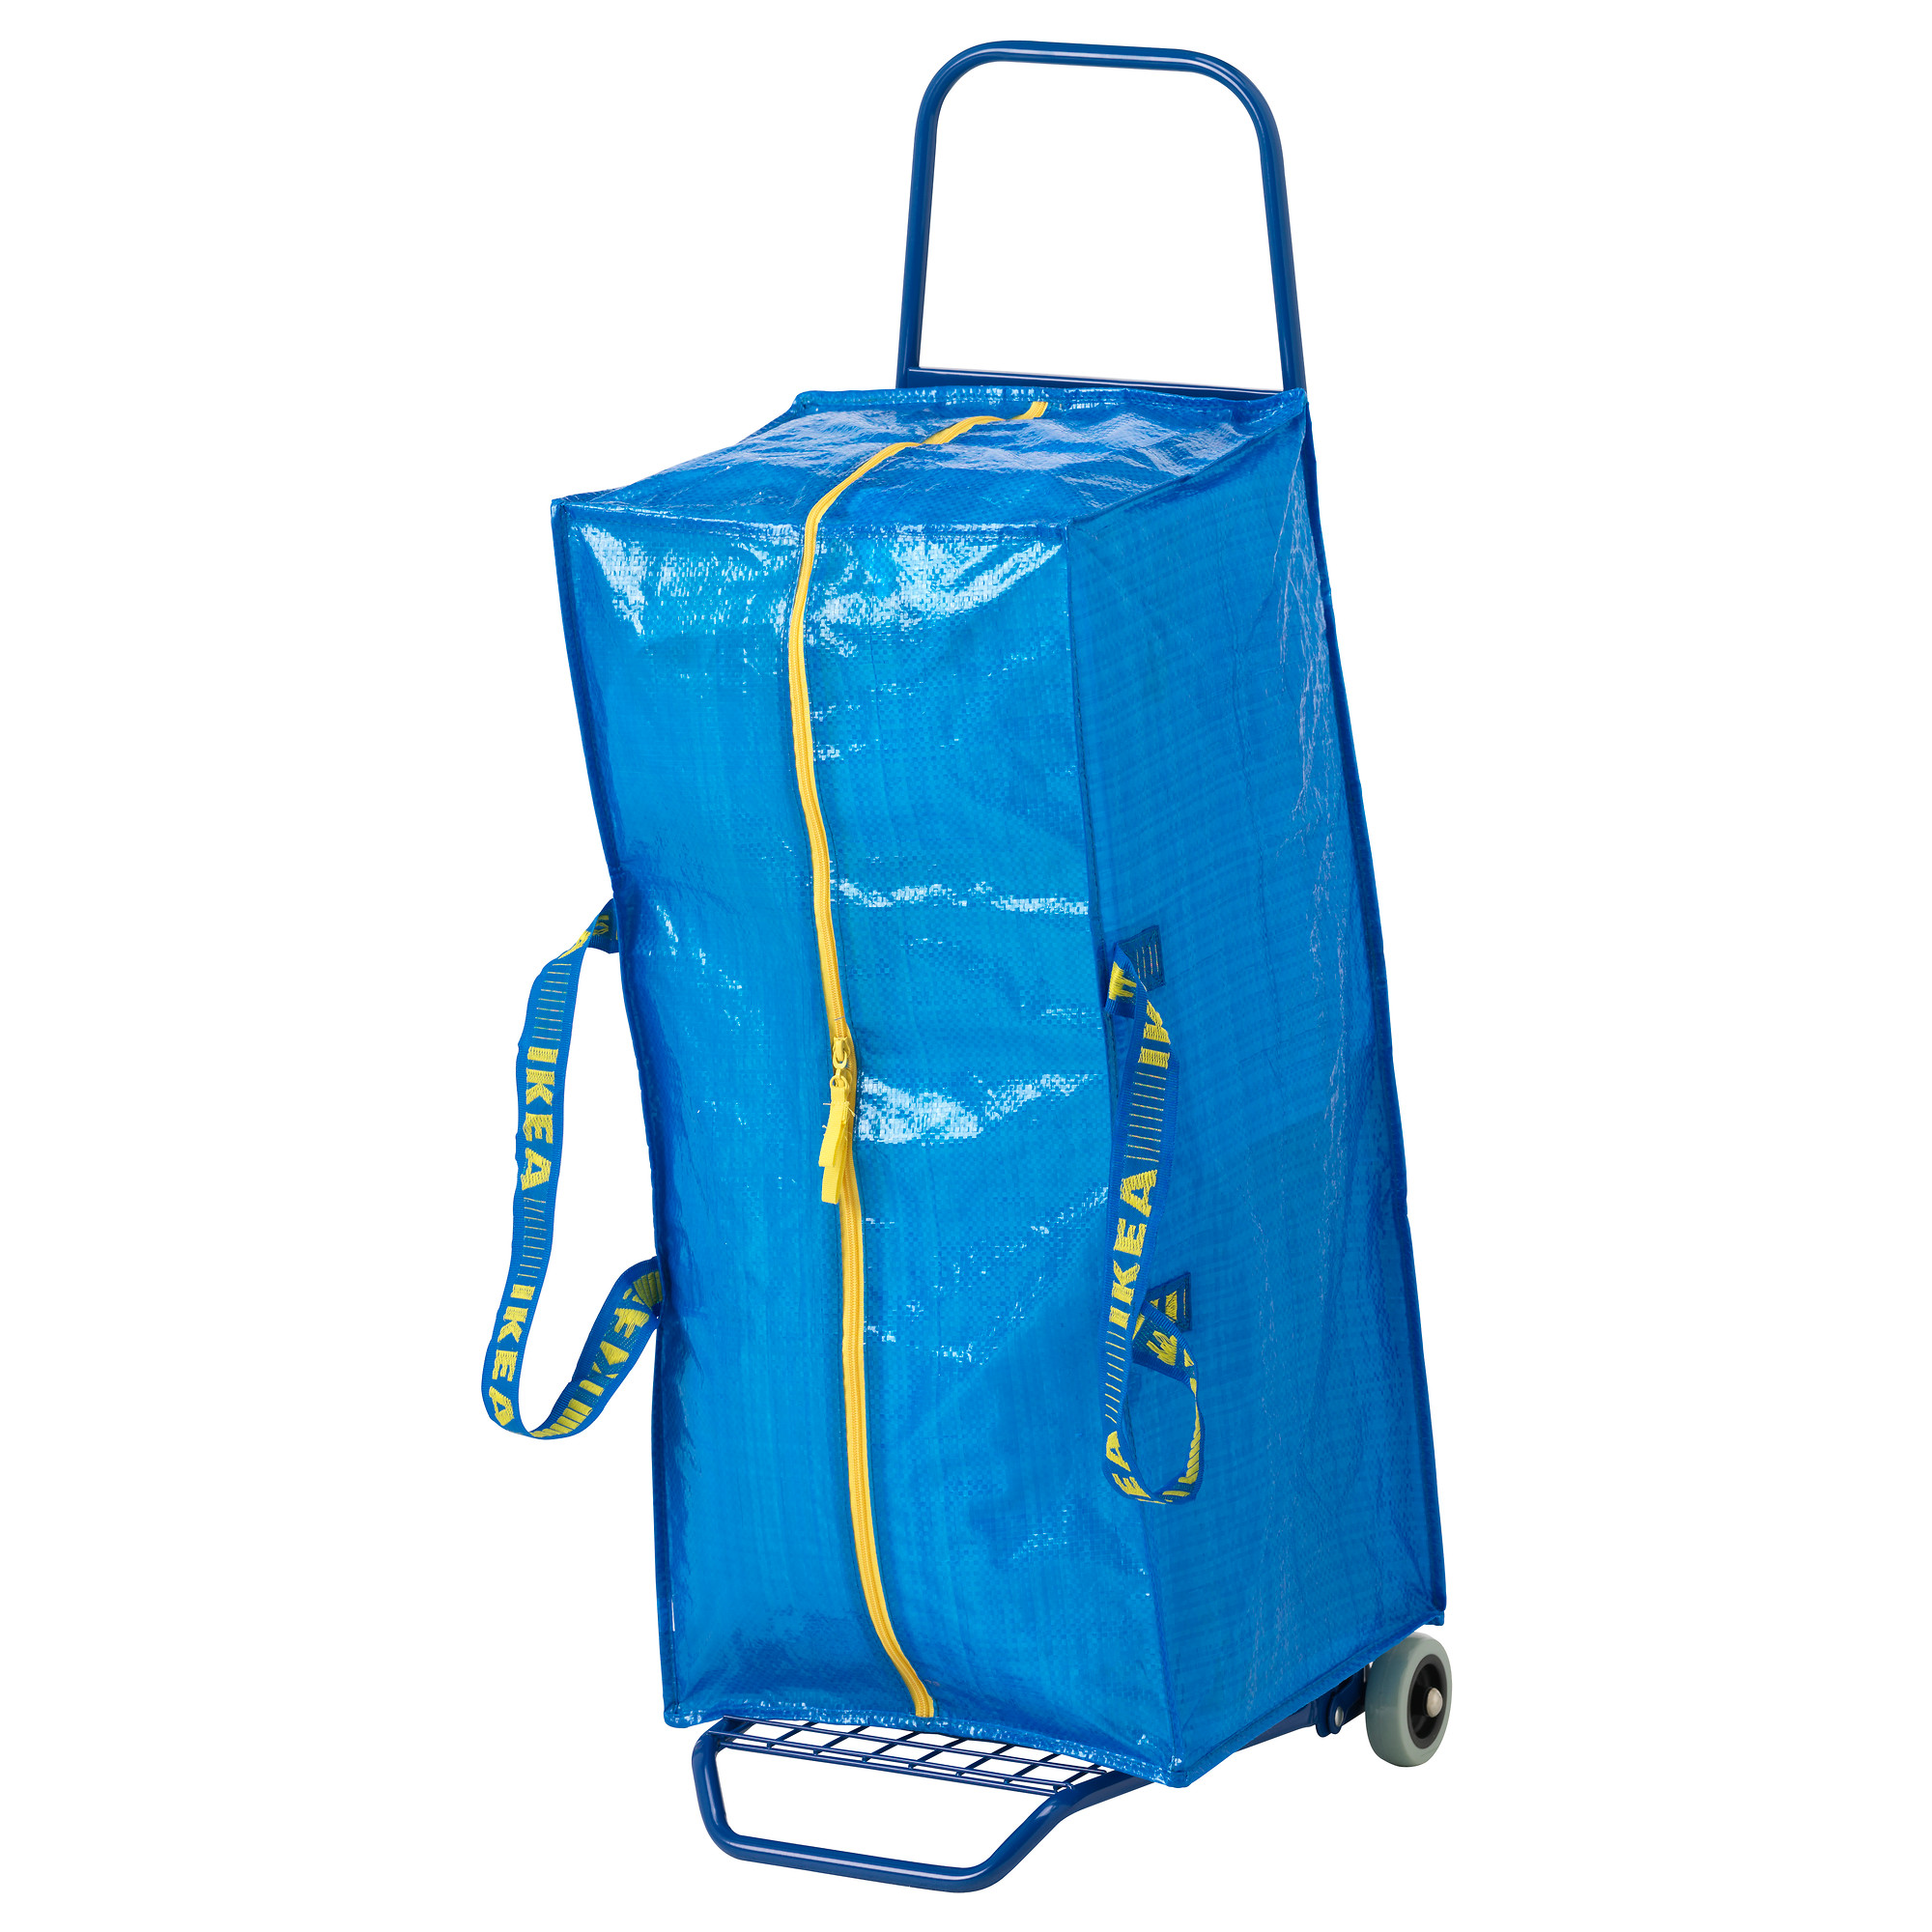 Bán túi đựng quần áo chăn màn chính hãng ikea dễ dùng tiện lợi dùng với xe đẩy